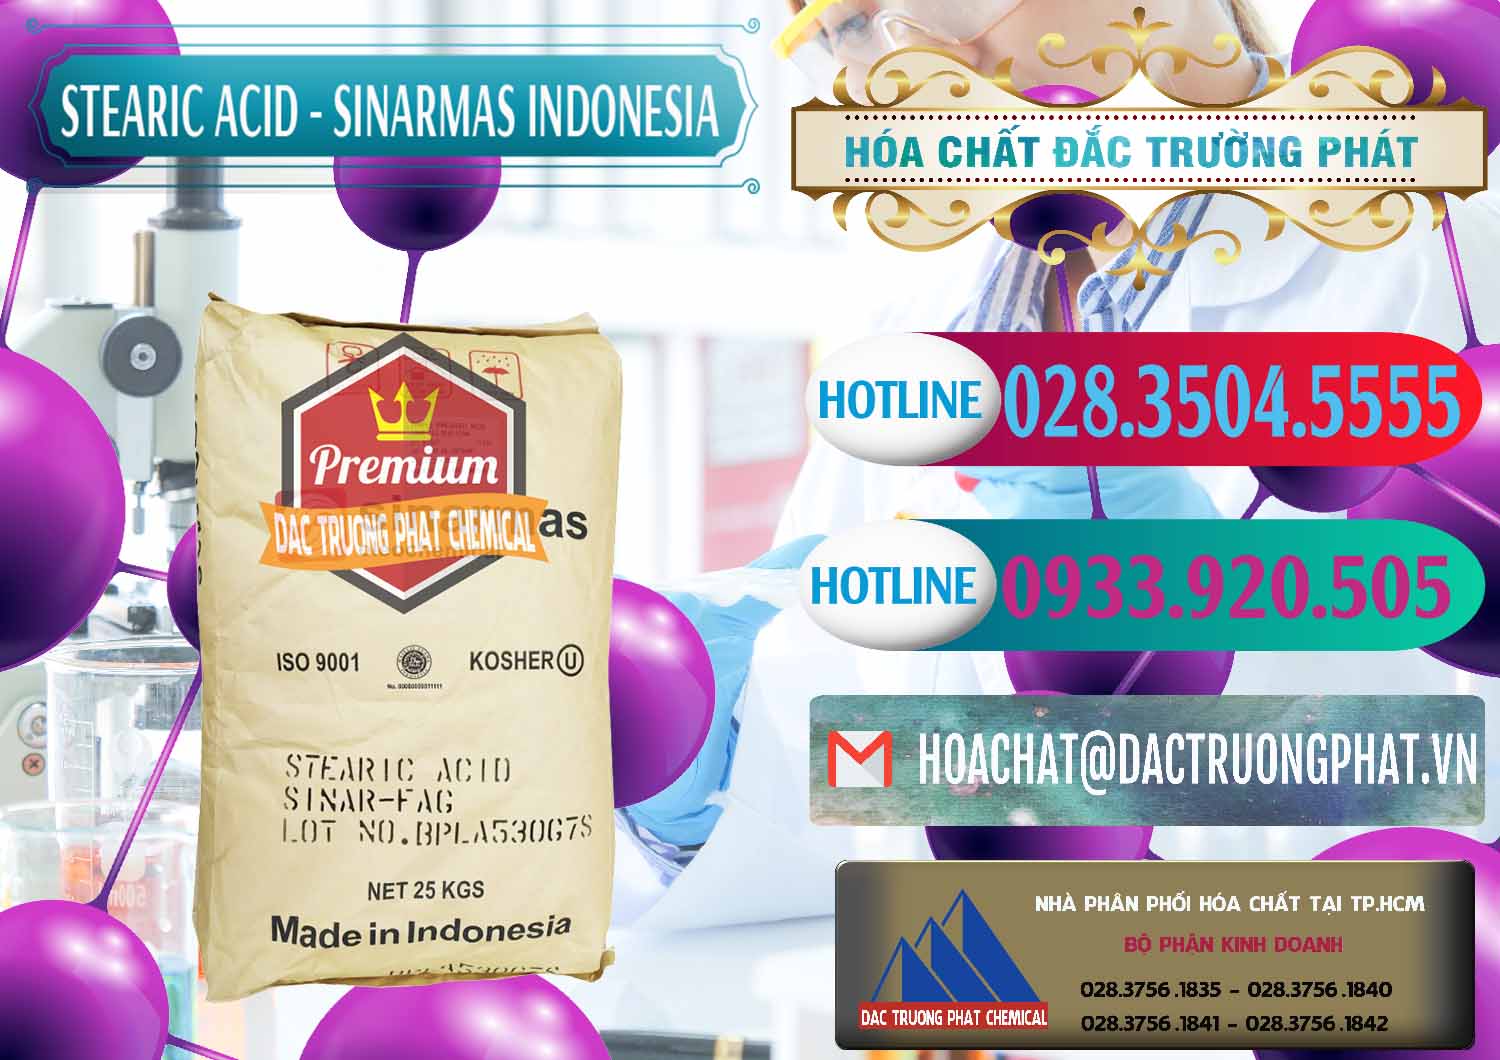 Cty bán & cung cấp Axit Stearic - Stearic Acid Sinarmas Indonesia - 0389 - Công ty chuyên phân phối _ nhập khẩu hóa chất tại TP.HCM - truongphat.vn